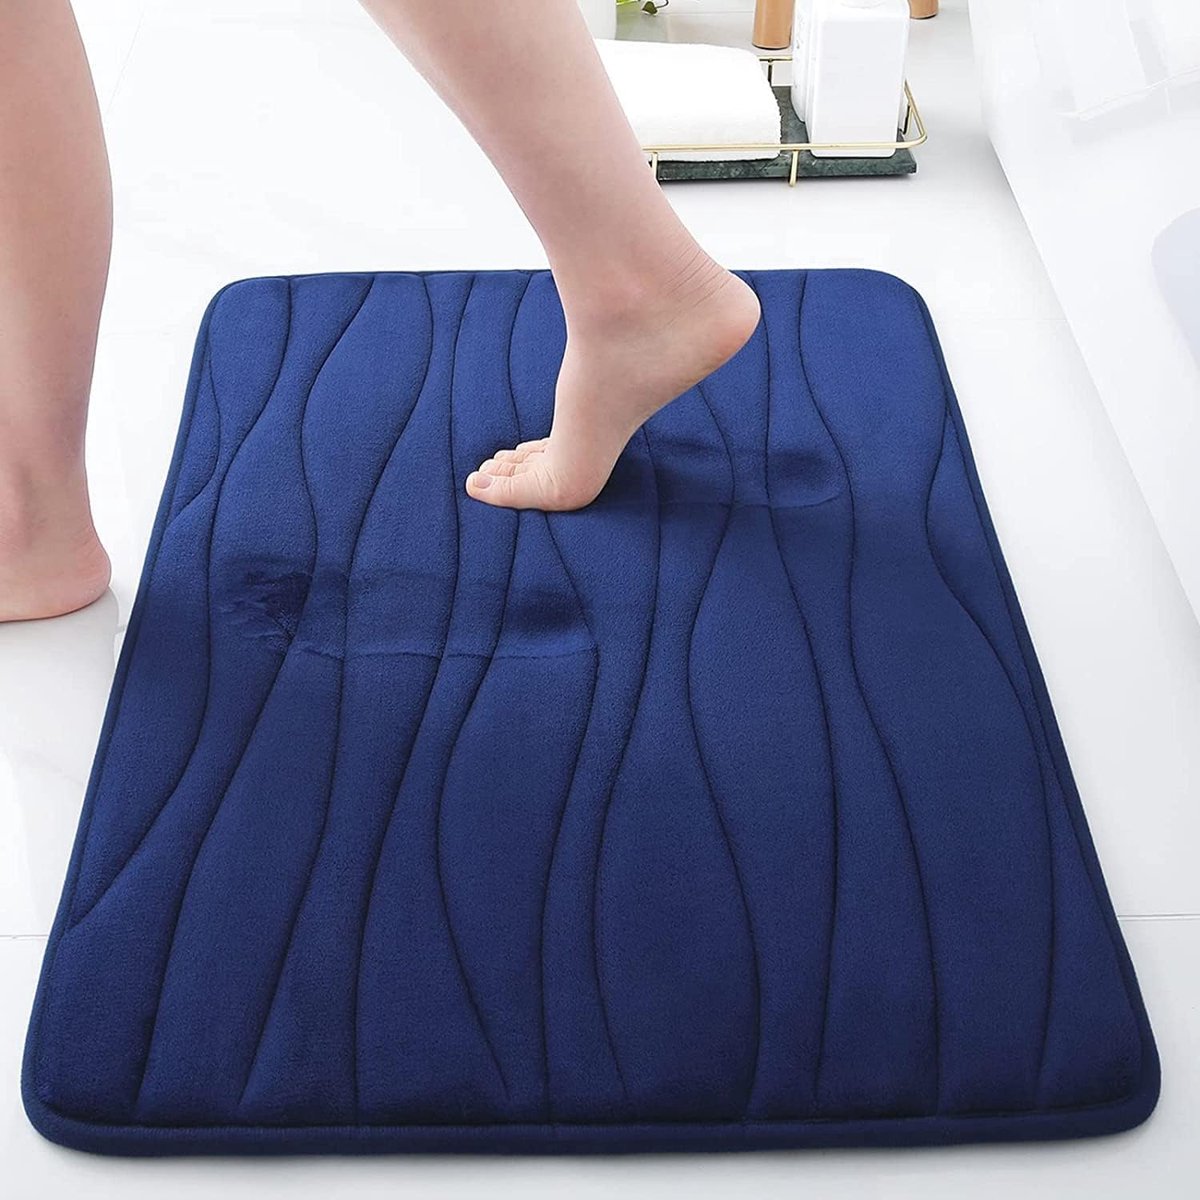 Badkamertapijt, zachte badmat, antislip, absorberend, wasbaar, marineblauw, 40 x 60 cm